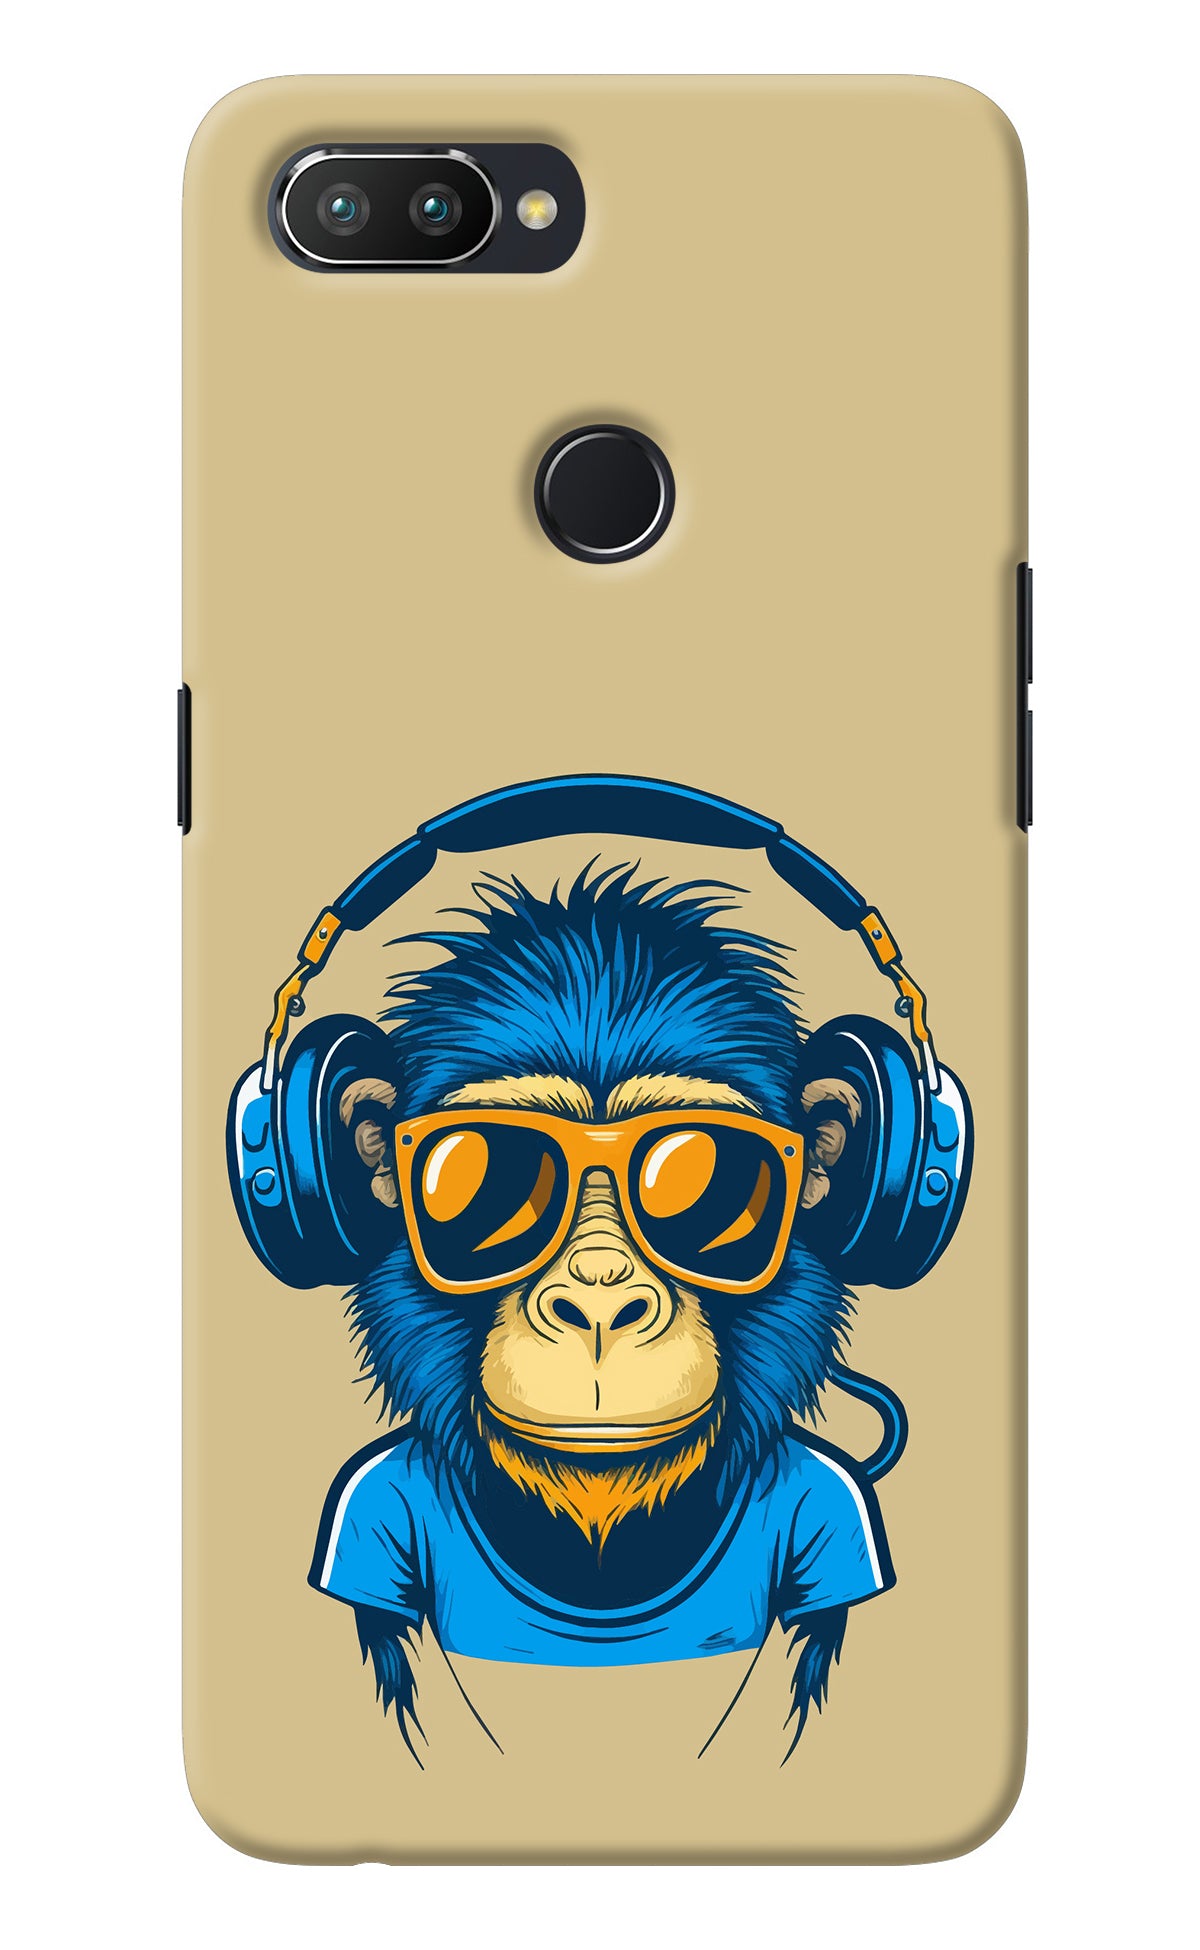 Monkey Headphone Realme 2 Pro Back Cover